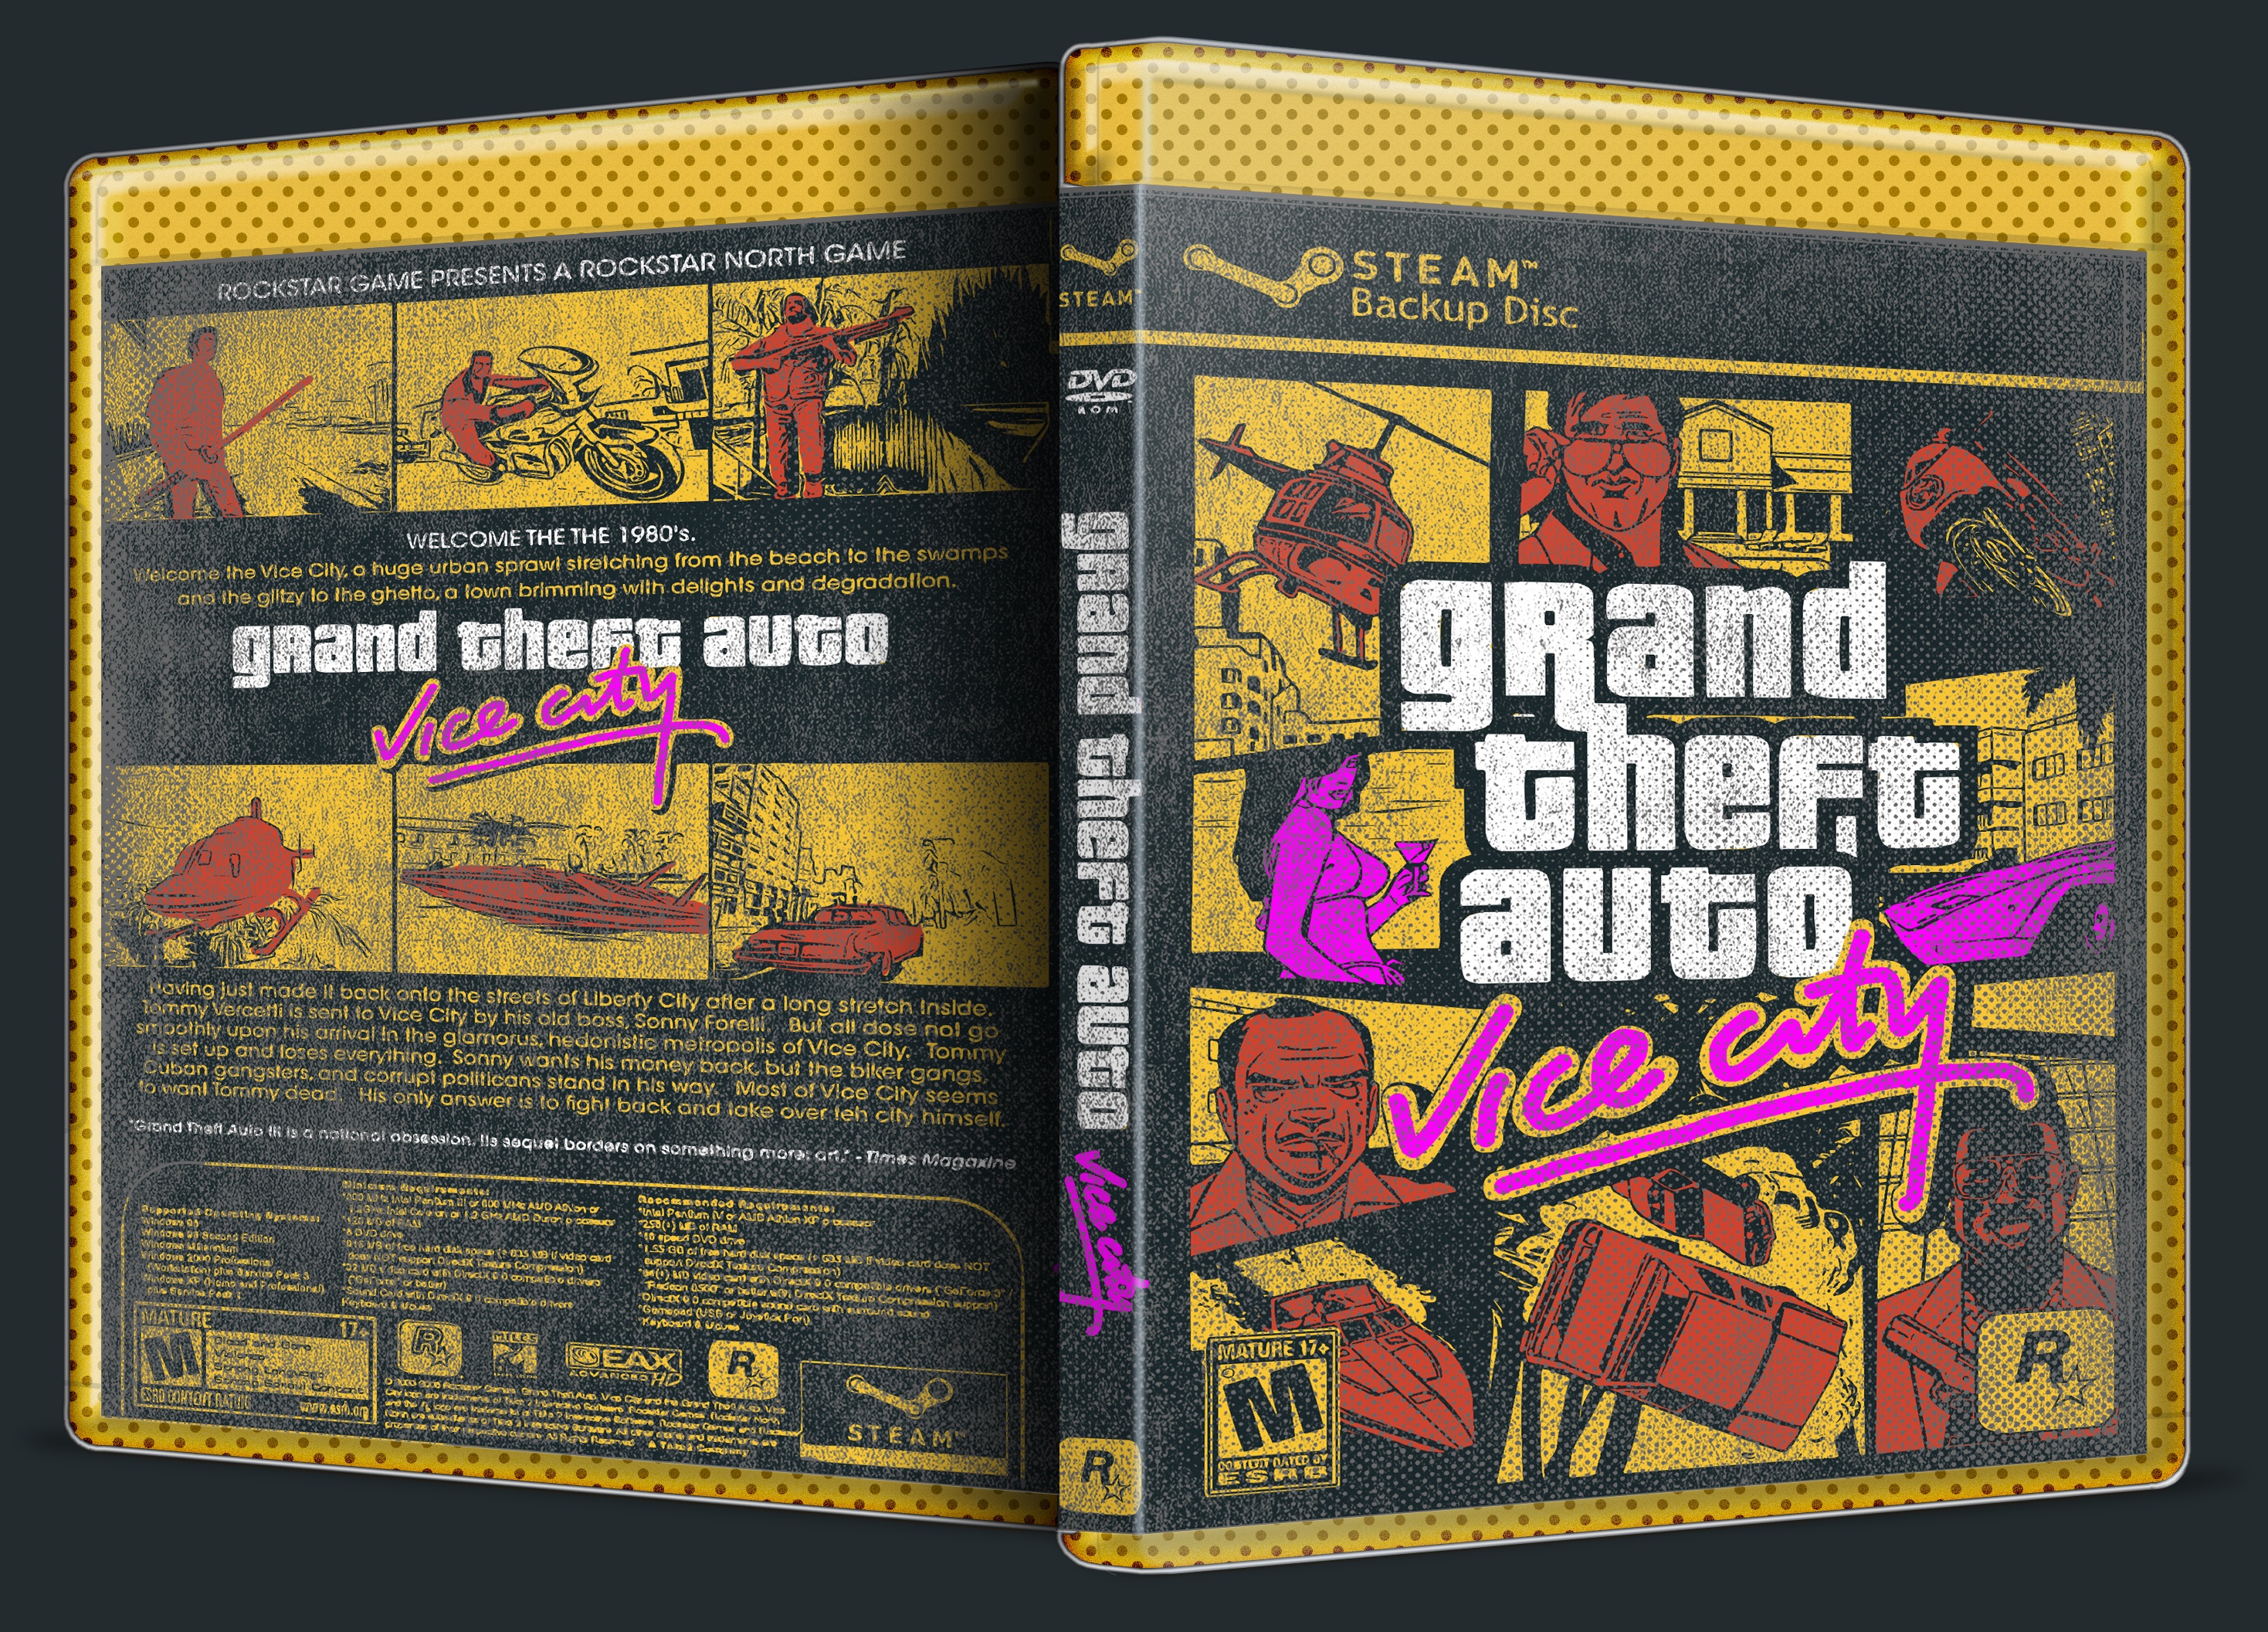 Grand Theft Auto: Vice City box cover